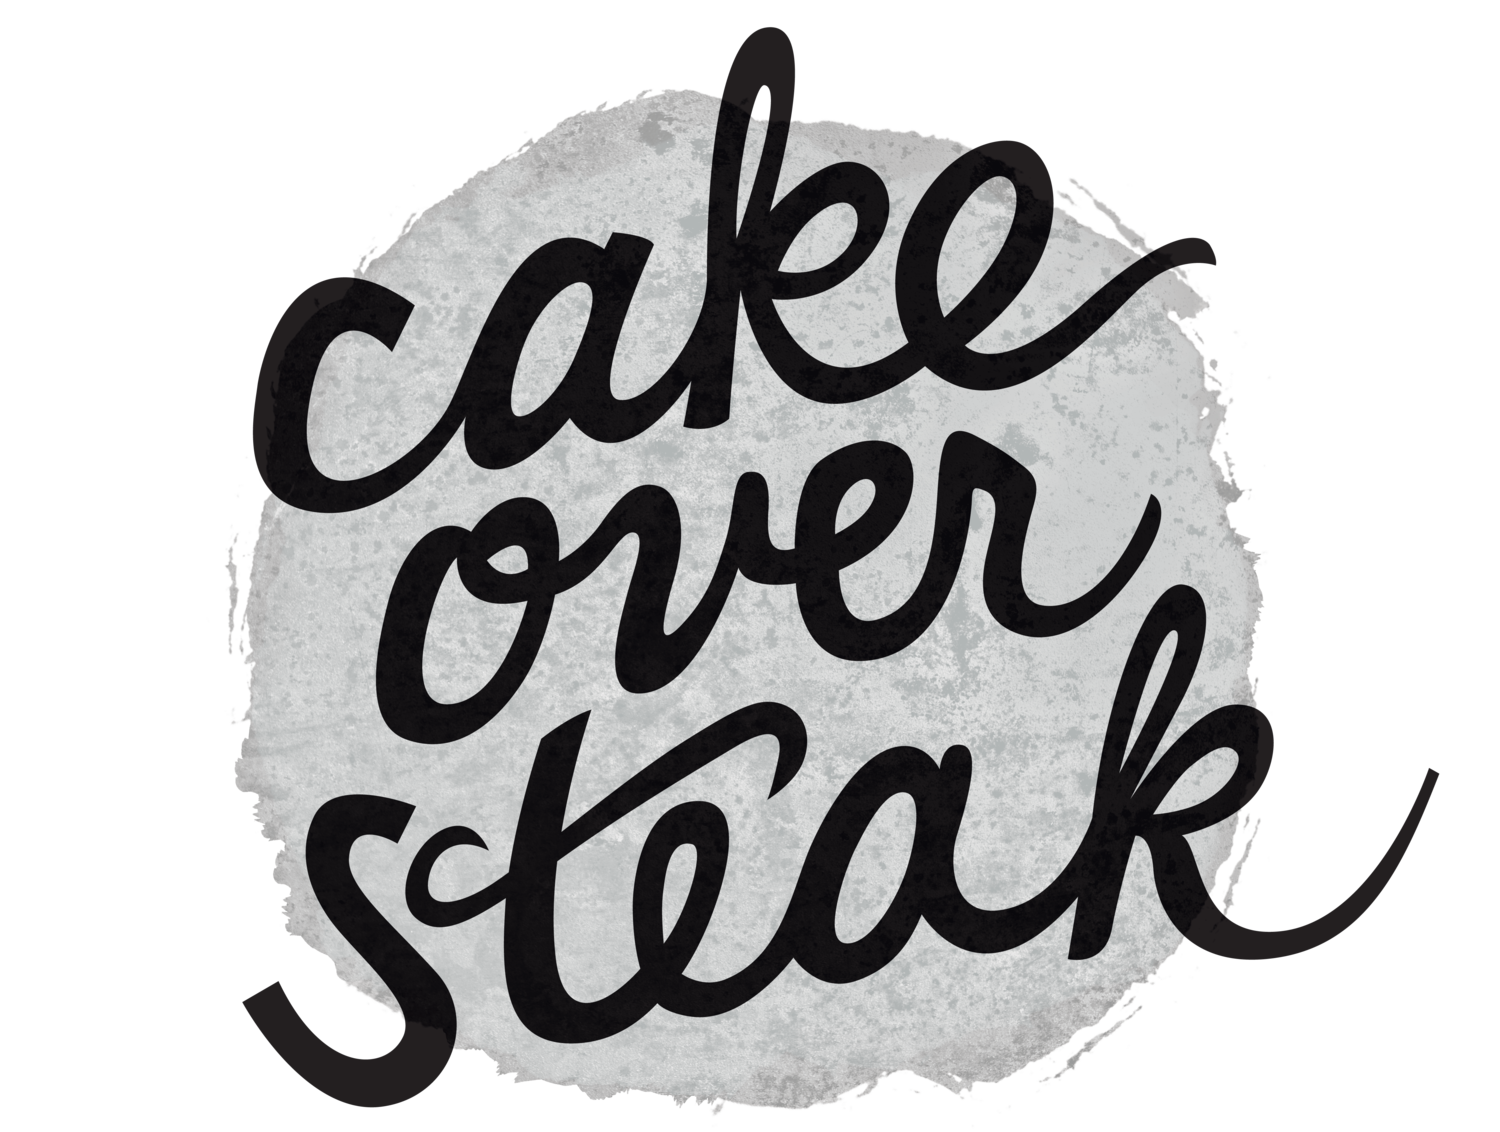 Cake Over Steak